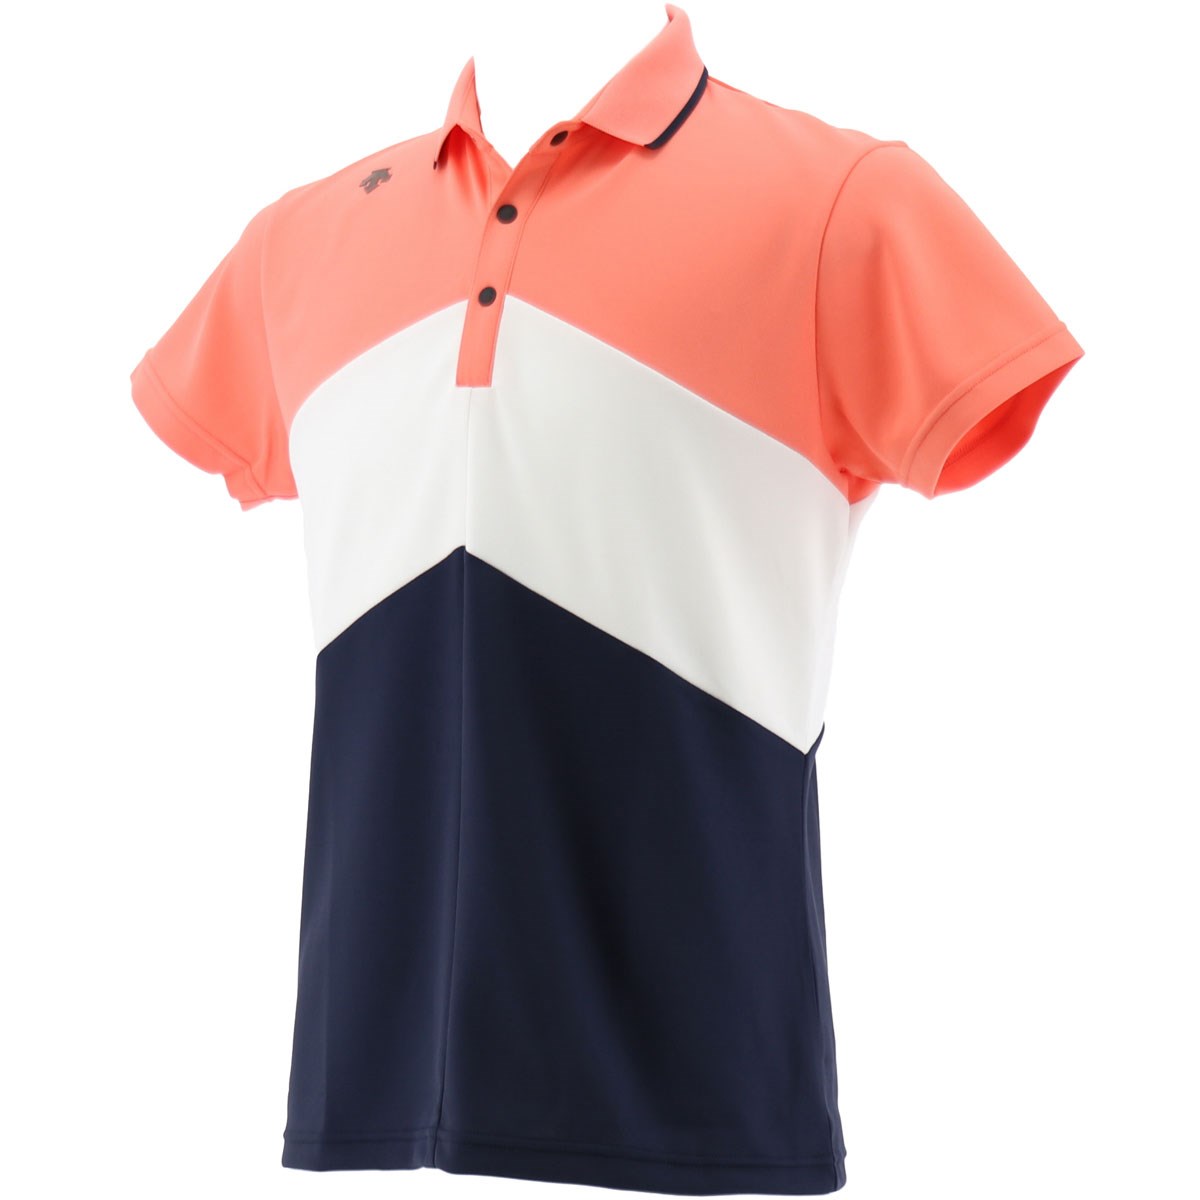 「デサントゴルフ(DESCENTE GOLF) 半袖ポロシャツ 」（ポロシャツ・シャツ）- ゴルフ(GOLF)用品のネット通販